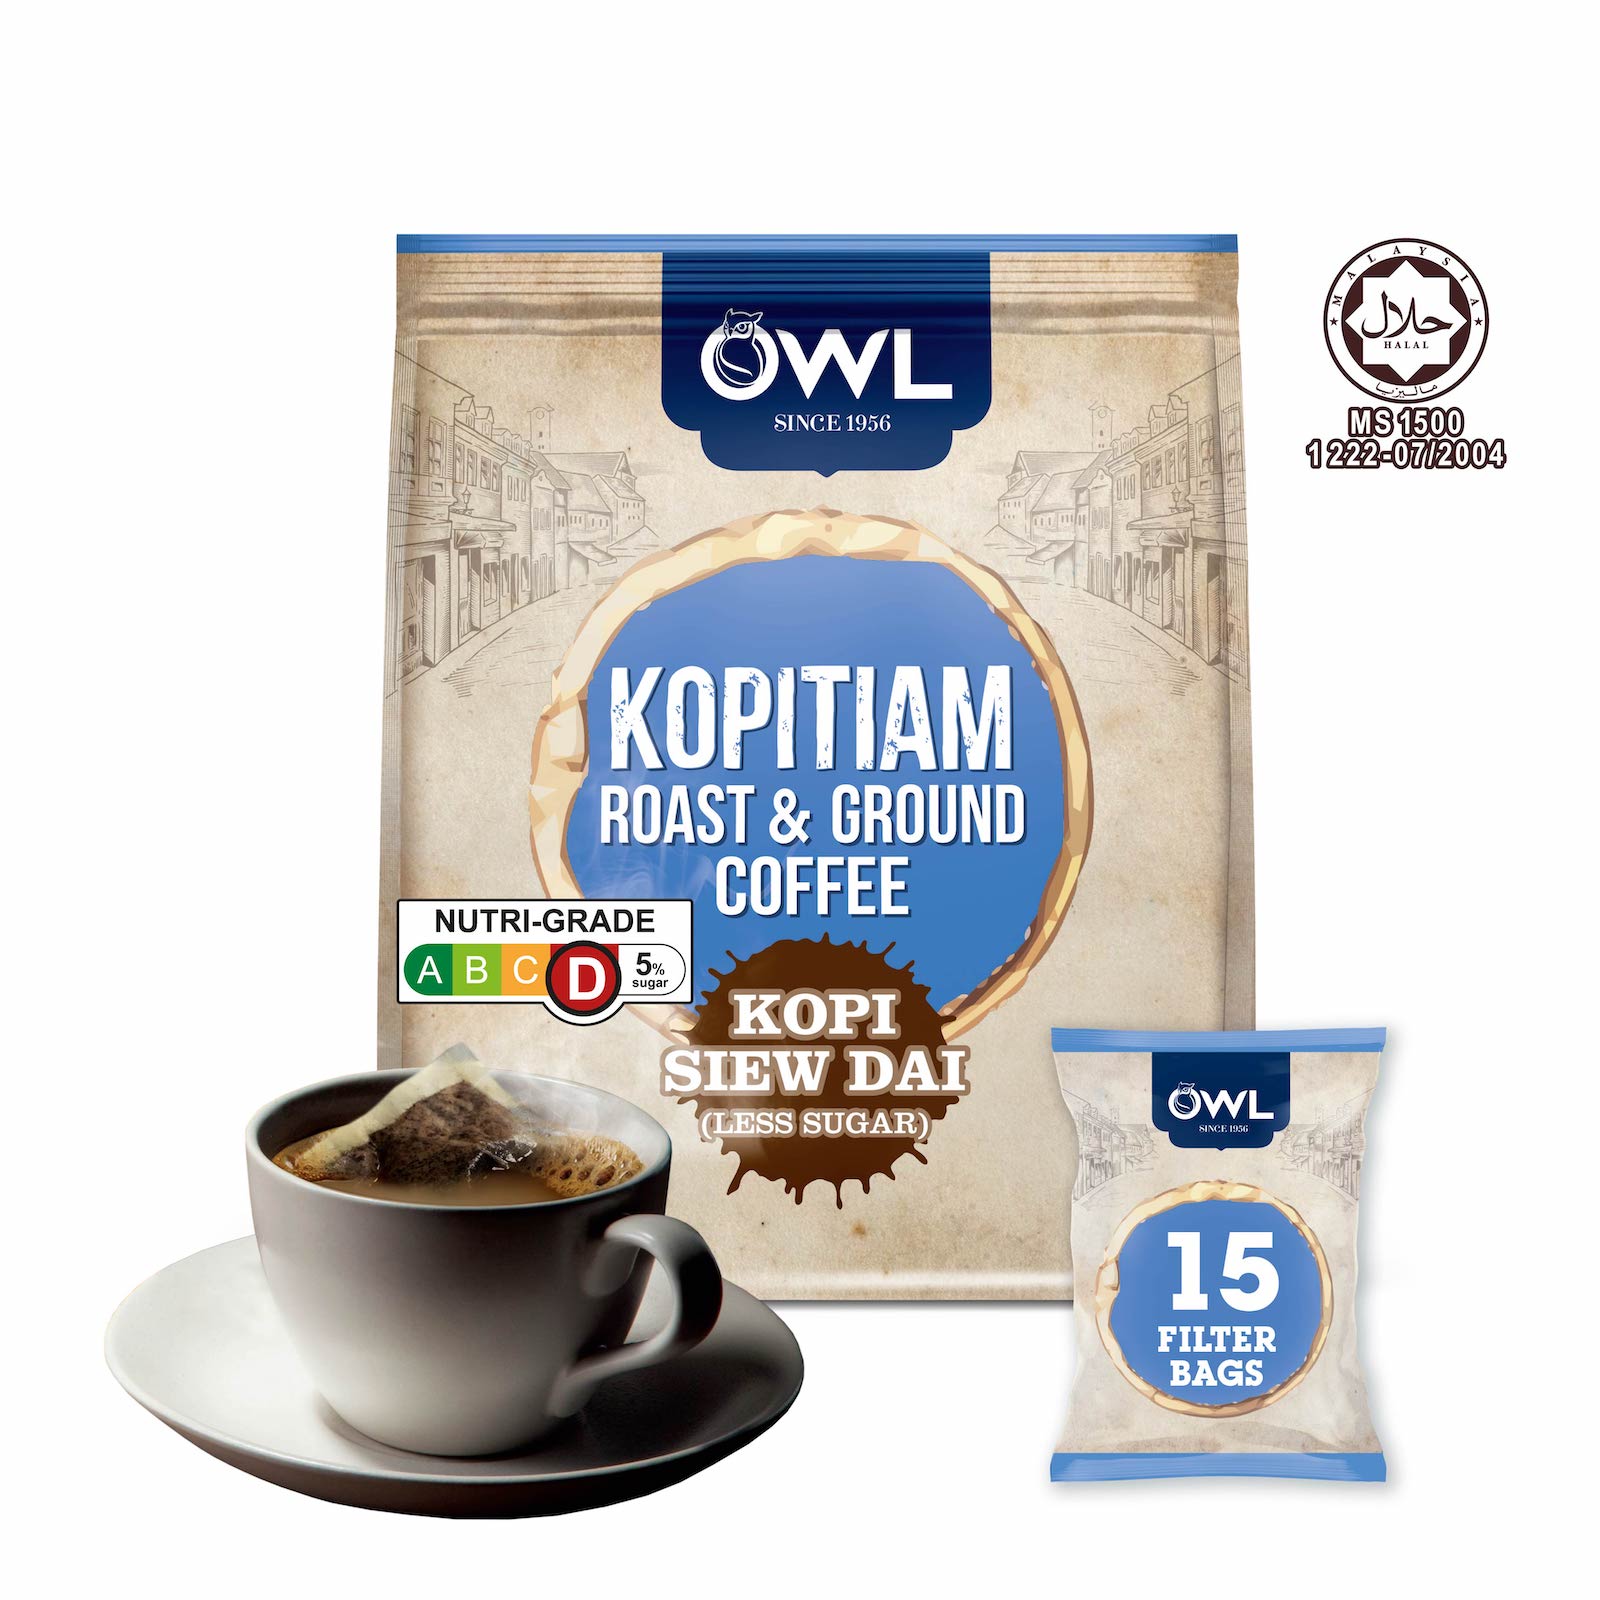 OWL Kopitiam Roast & Ground Coffee Kopi Siew Dai, 15 sachets